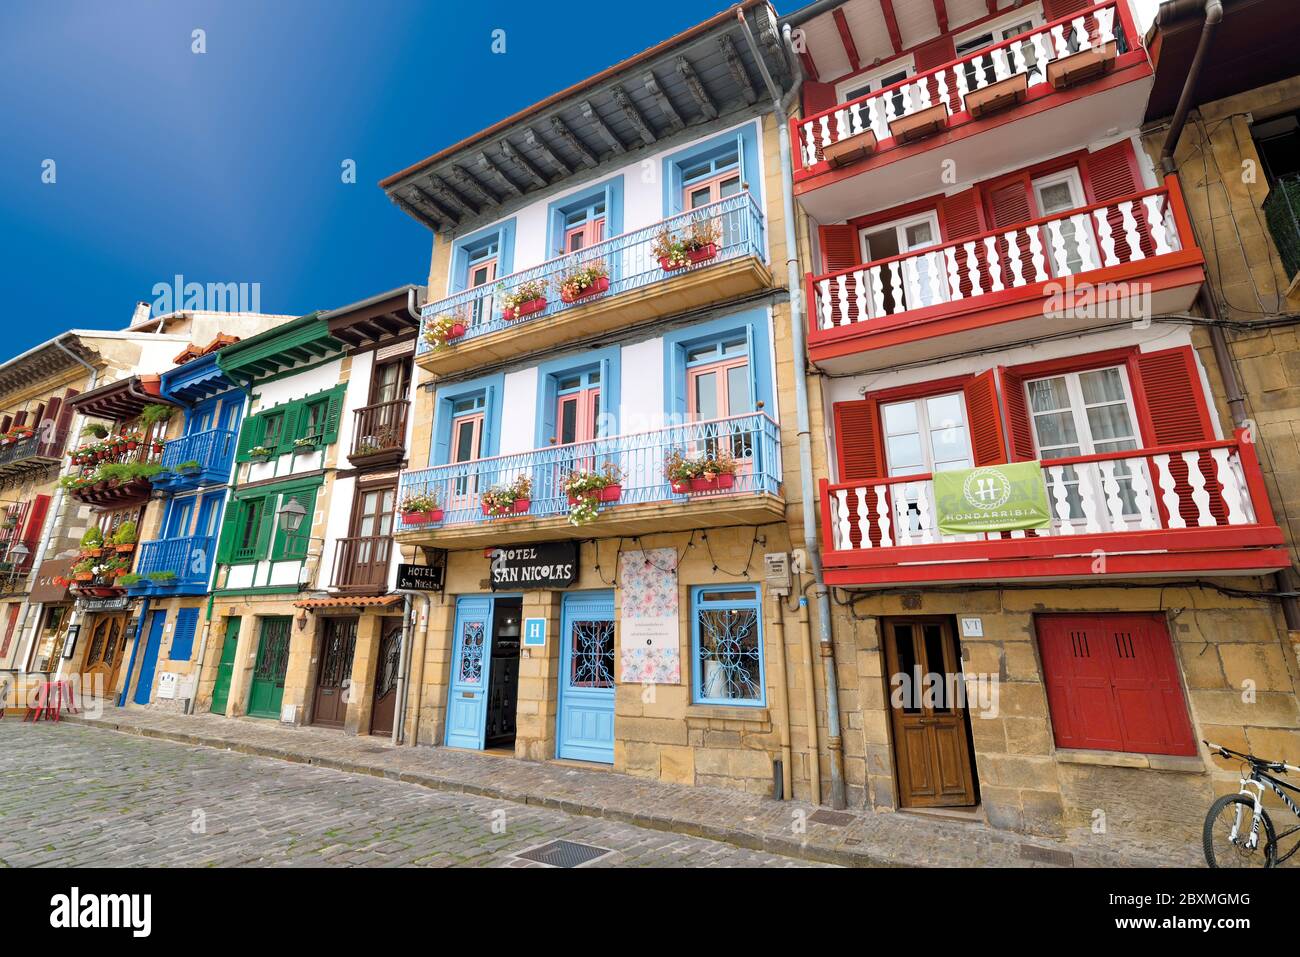 Casas de pueblo coloridas con balcones y ventanas rojas y azules que bordean una calle medieval en el centro de la ciudad de Hondarribia Foto de stock